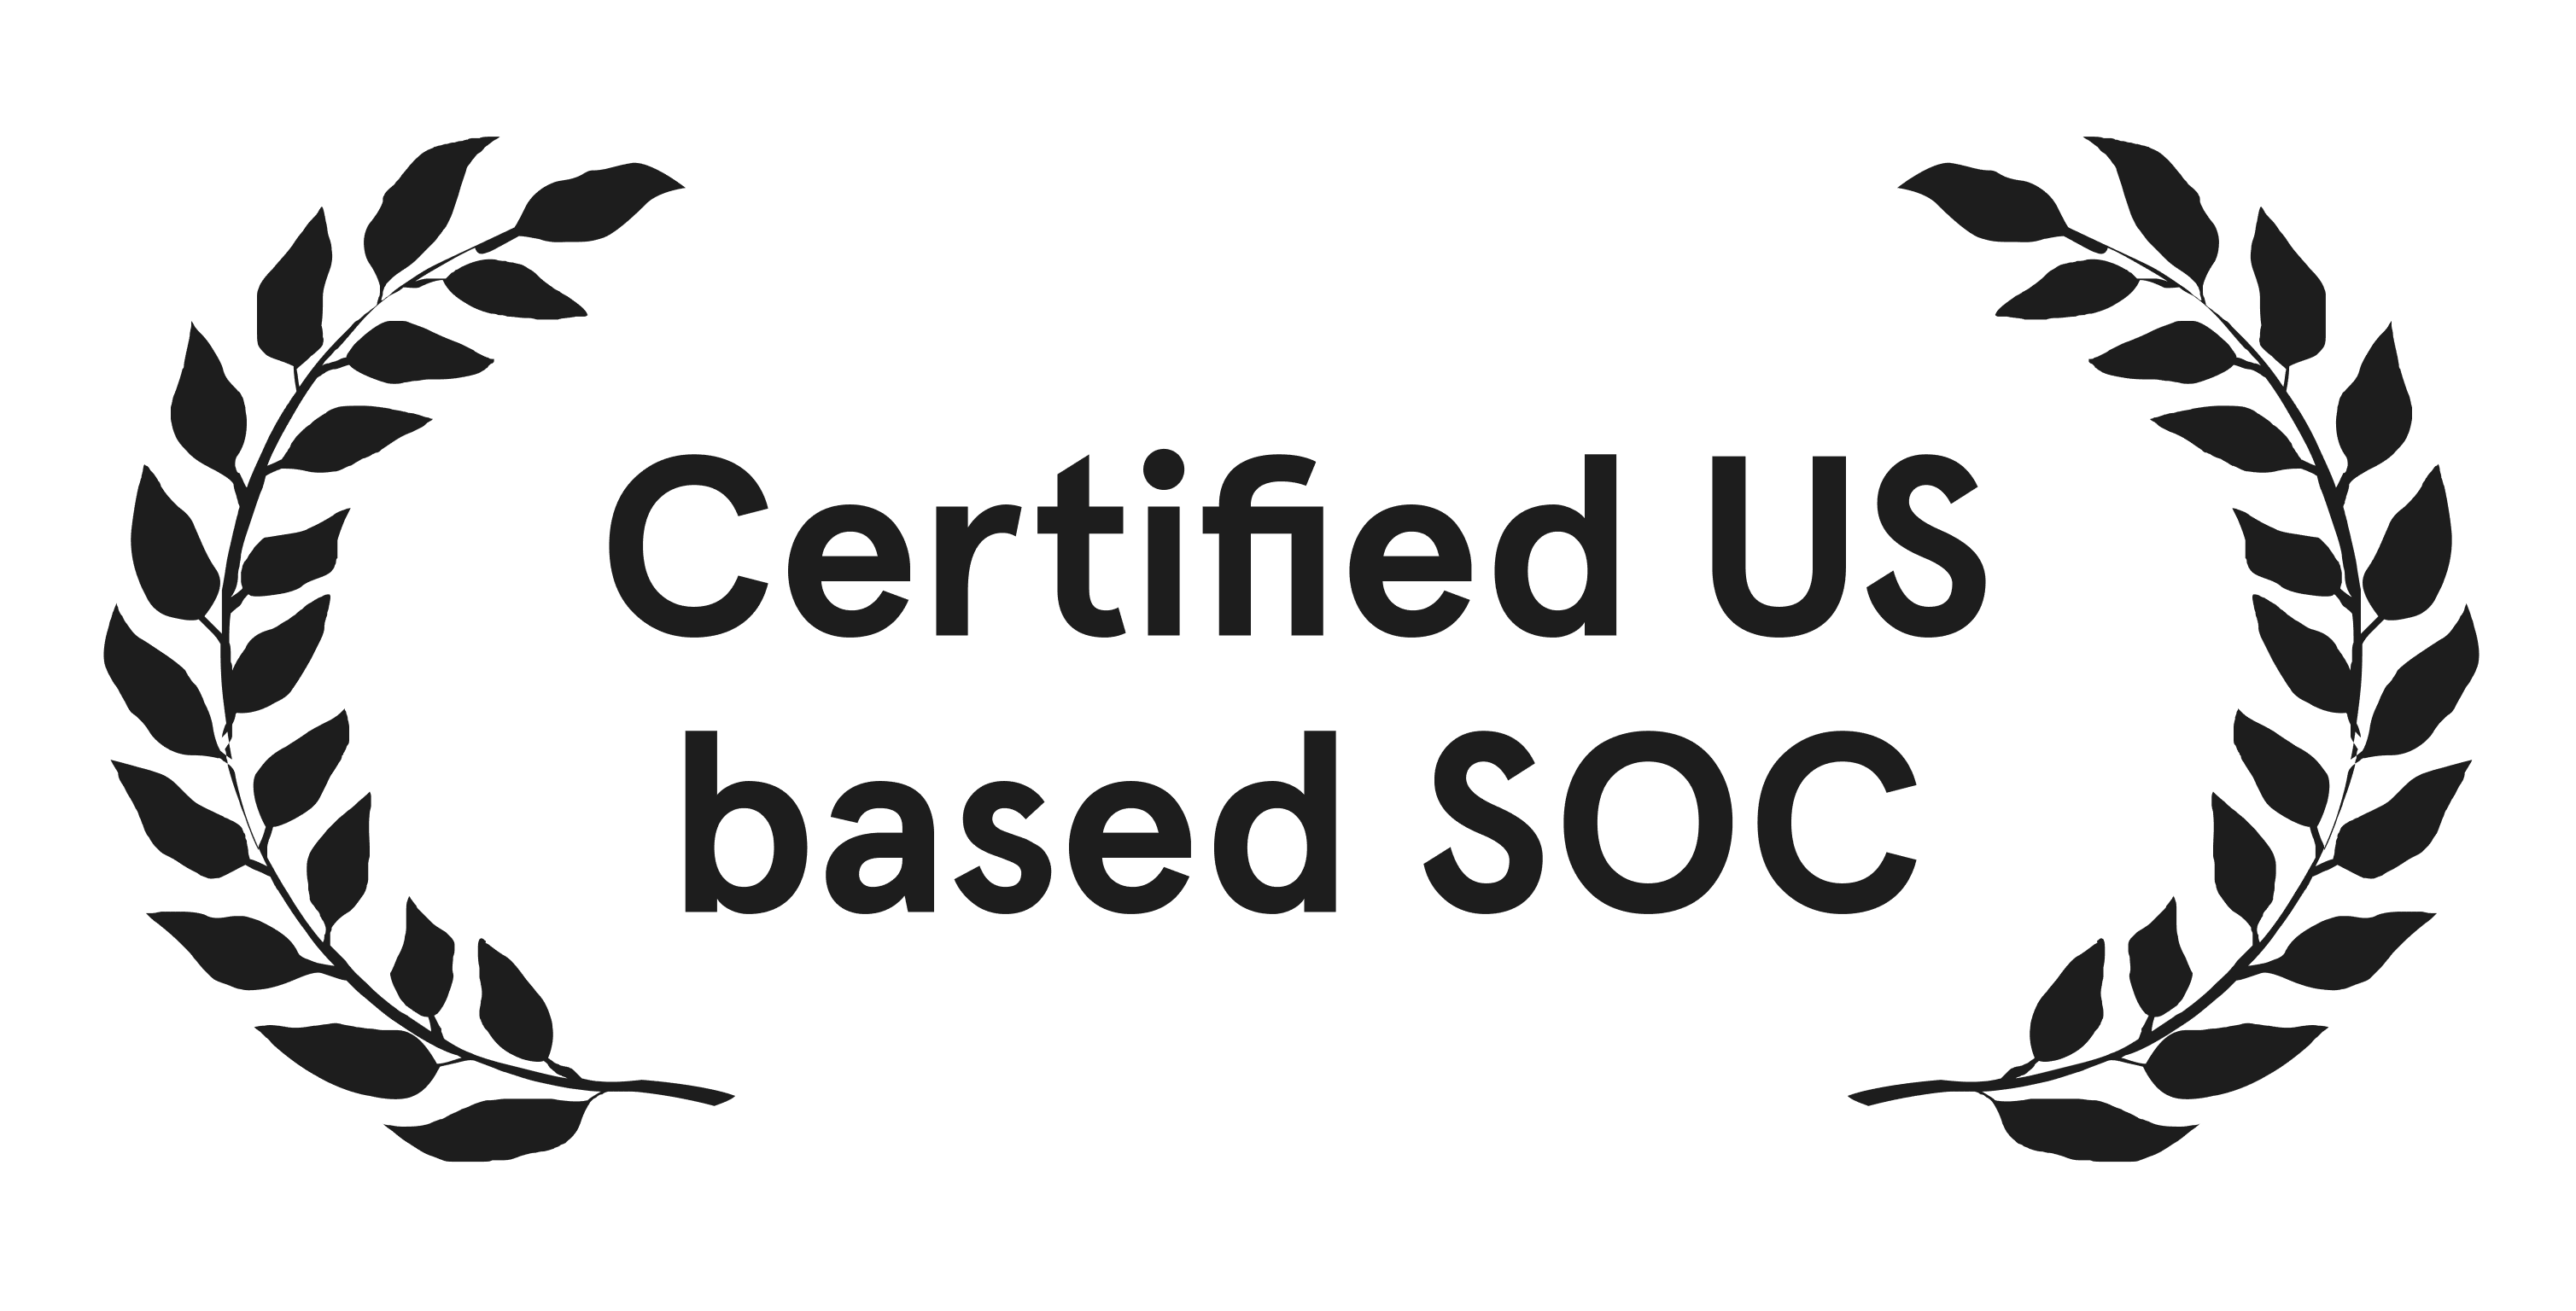 Certified US based SOC